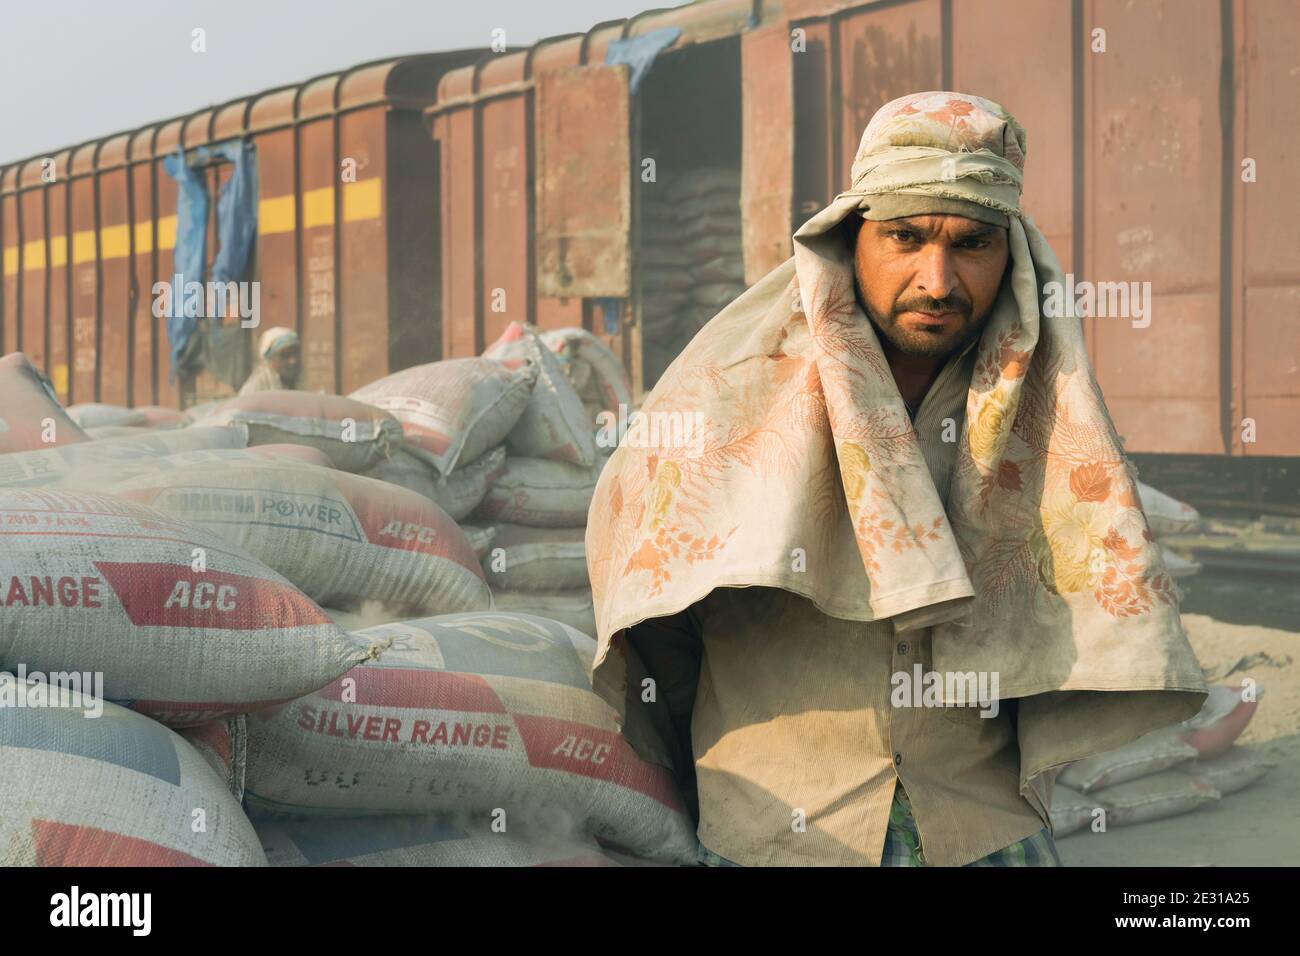 Uomo che indossa solo sciarpa per la testa come protezione impiegata per spostare sacchi di cemento da treno a camion a Mathura, Uttar Pradesh, India. Foto Stock